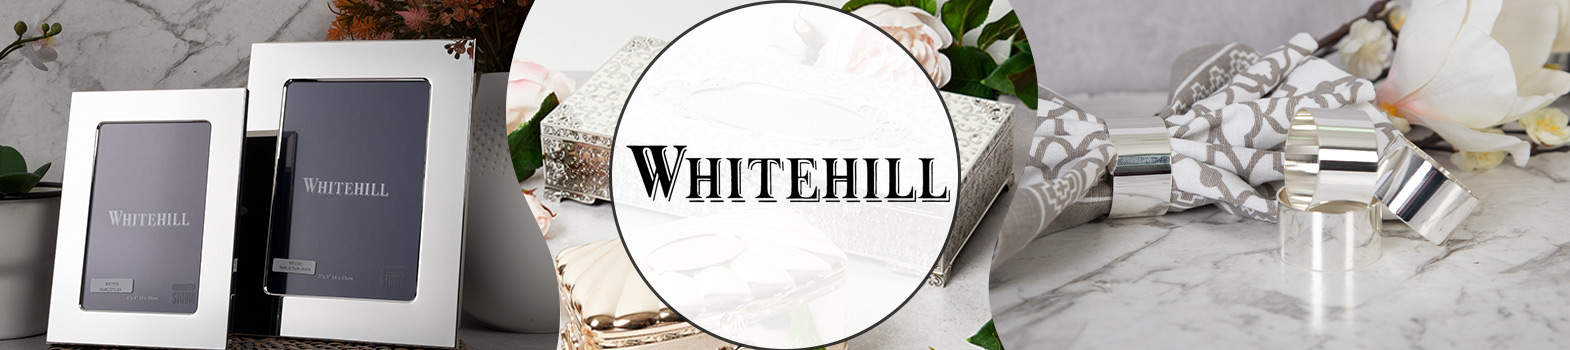 Whitehill